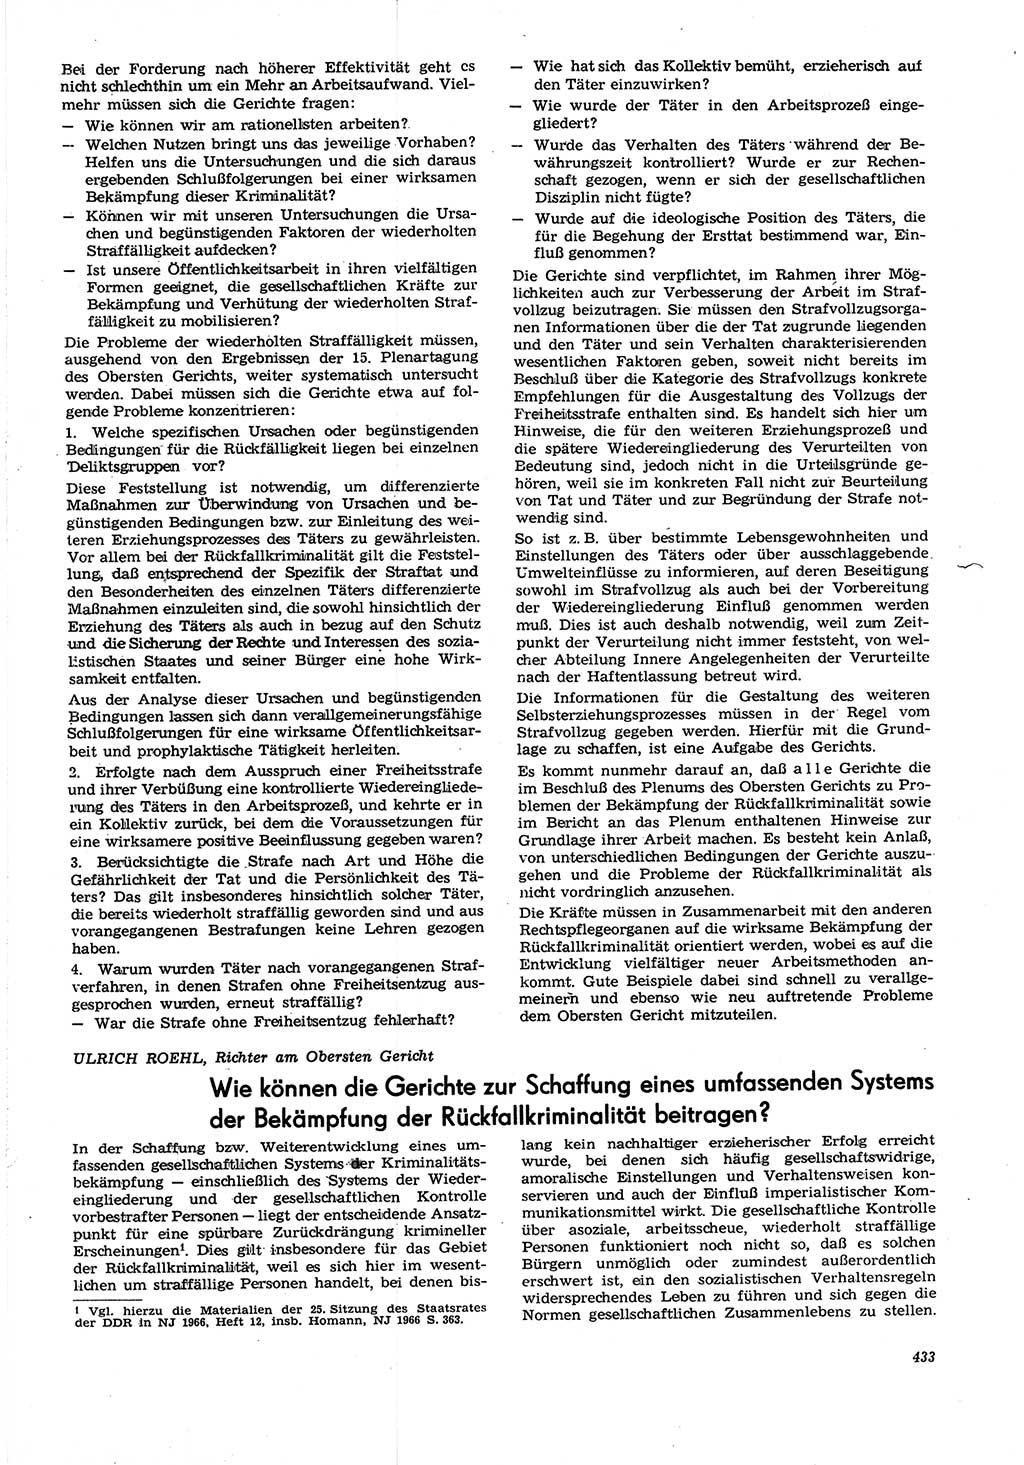 Neue Justiz (NJ), Zeitschrift für Recht und Rechtswissenschaft [Deutsche Demokratische Republik (DDR)], 21. Jahrgang 1967, Seite 433 (NJ DDR 1967, S. 433)